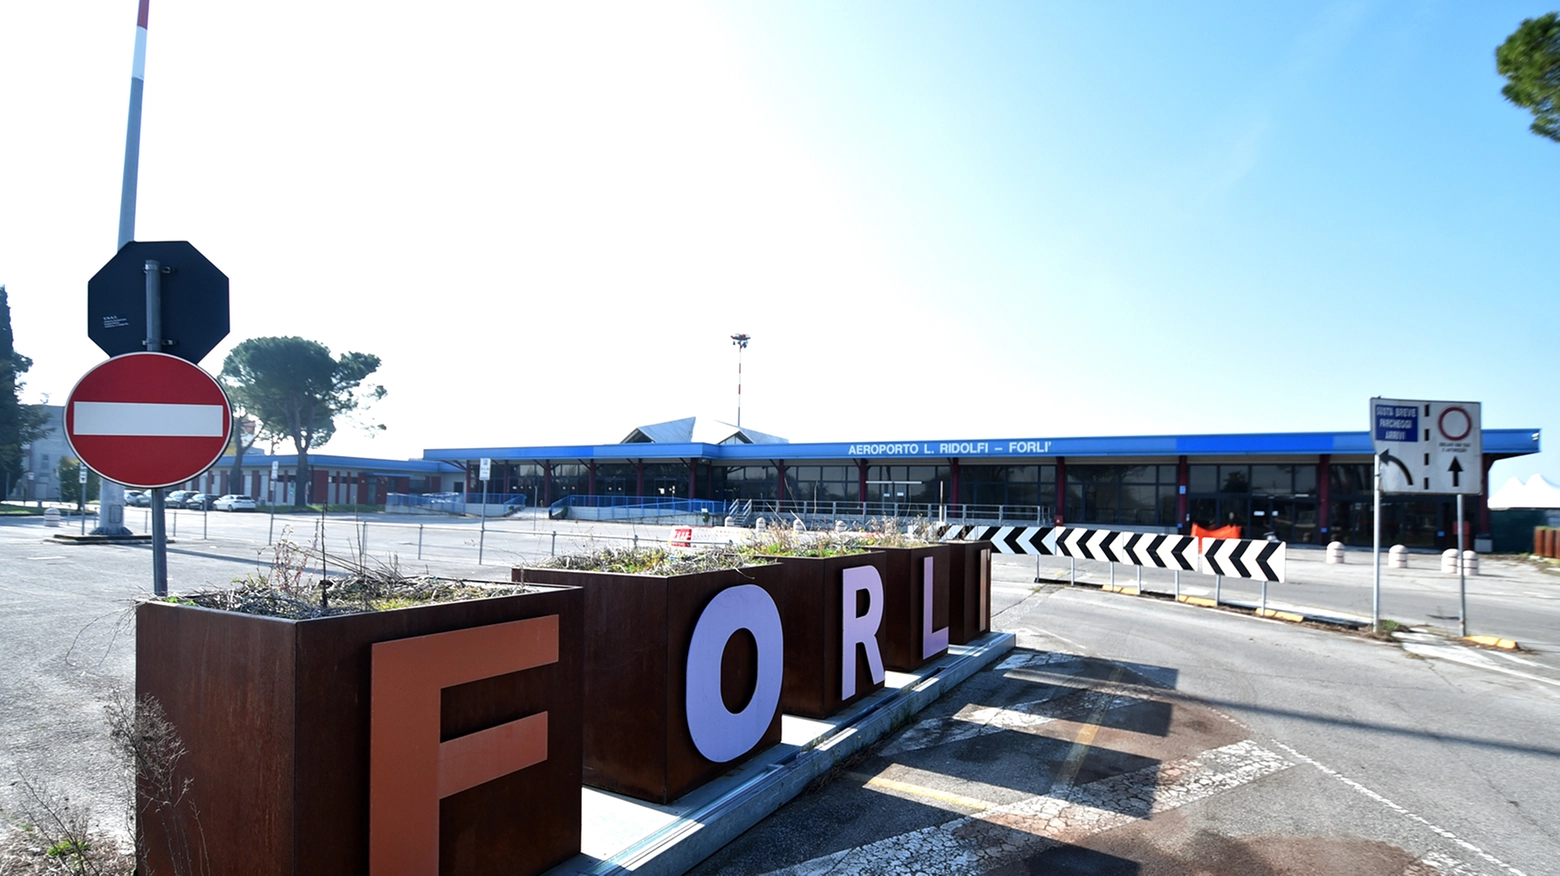 Aeroporto di Forlì (Foto Fantini)